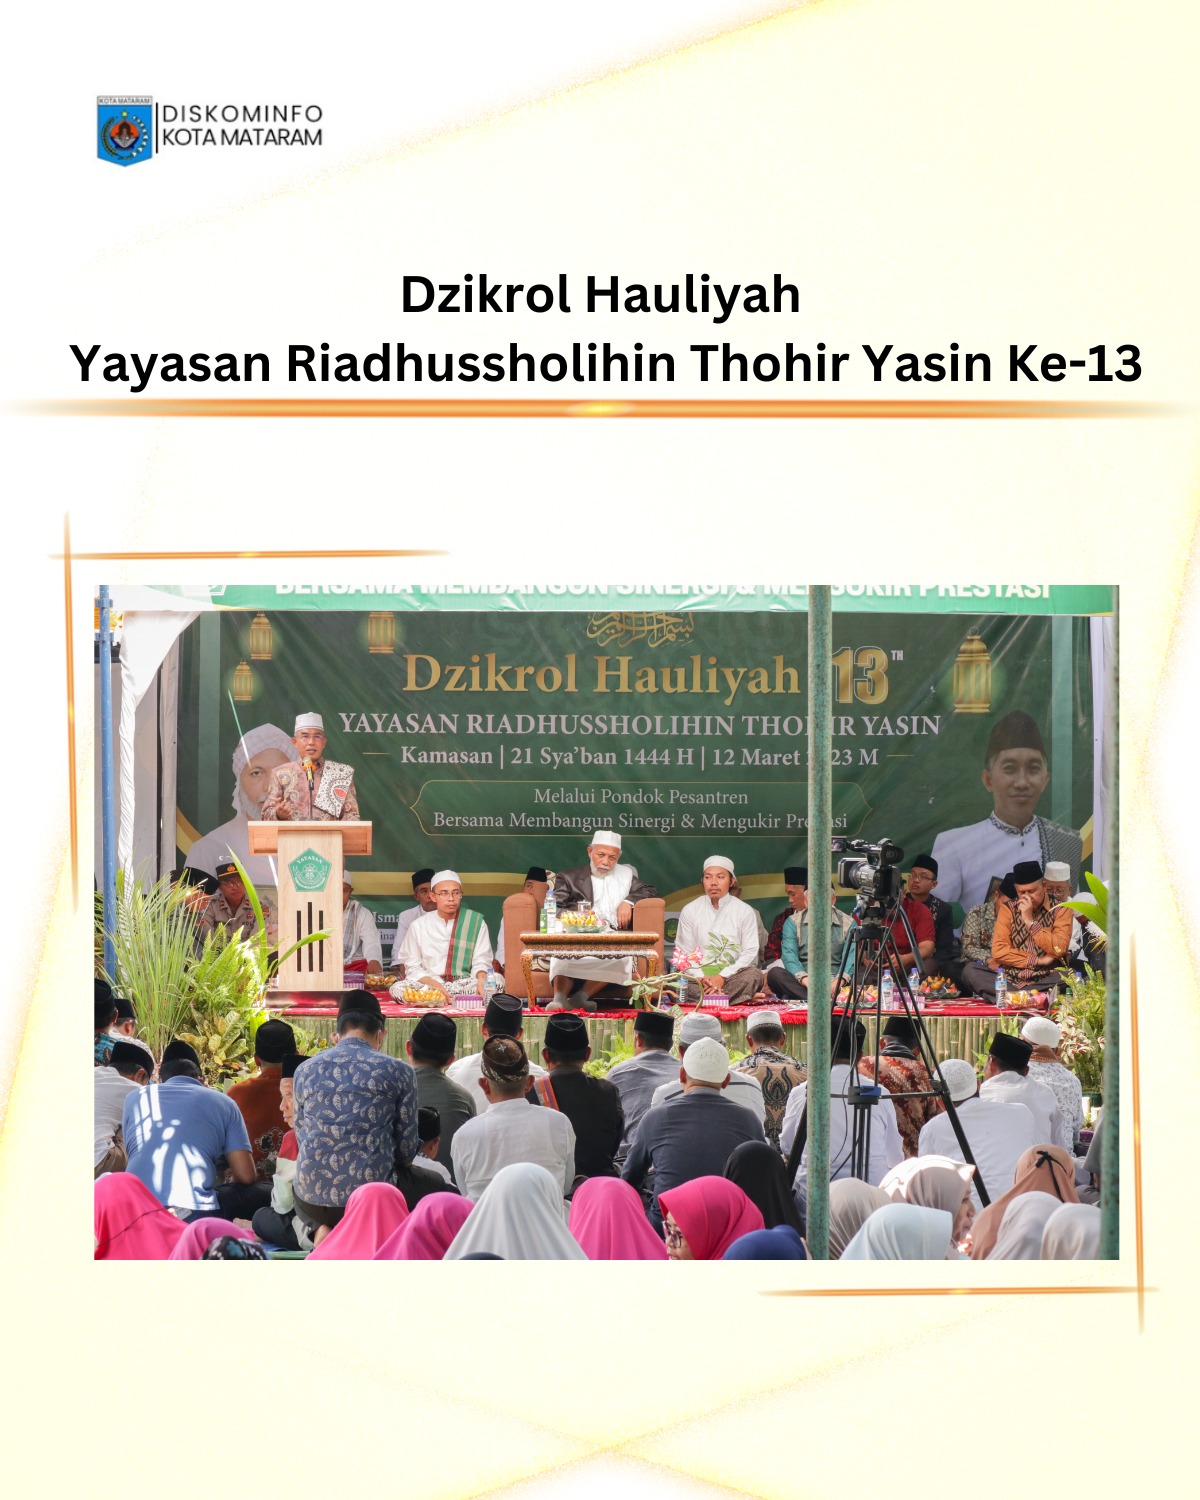 Dzikrol Hauliyah Yayasan Riadhussholihin Thohir Yasin ke-13